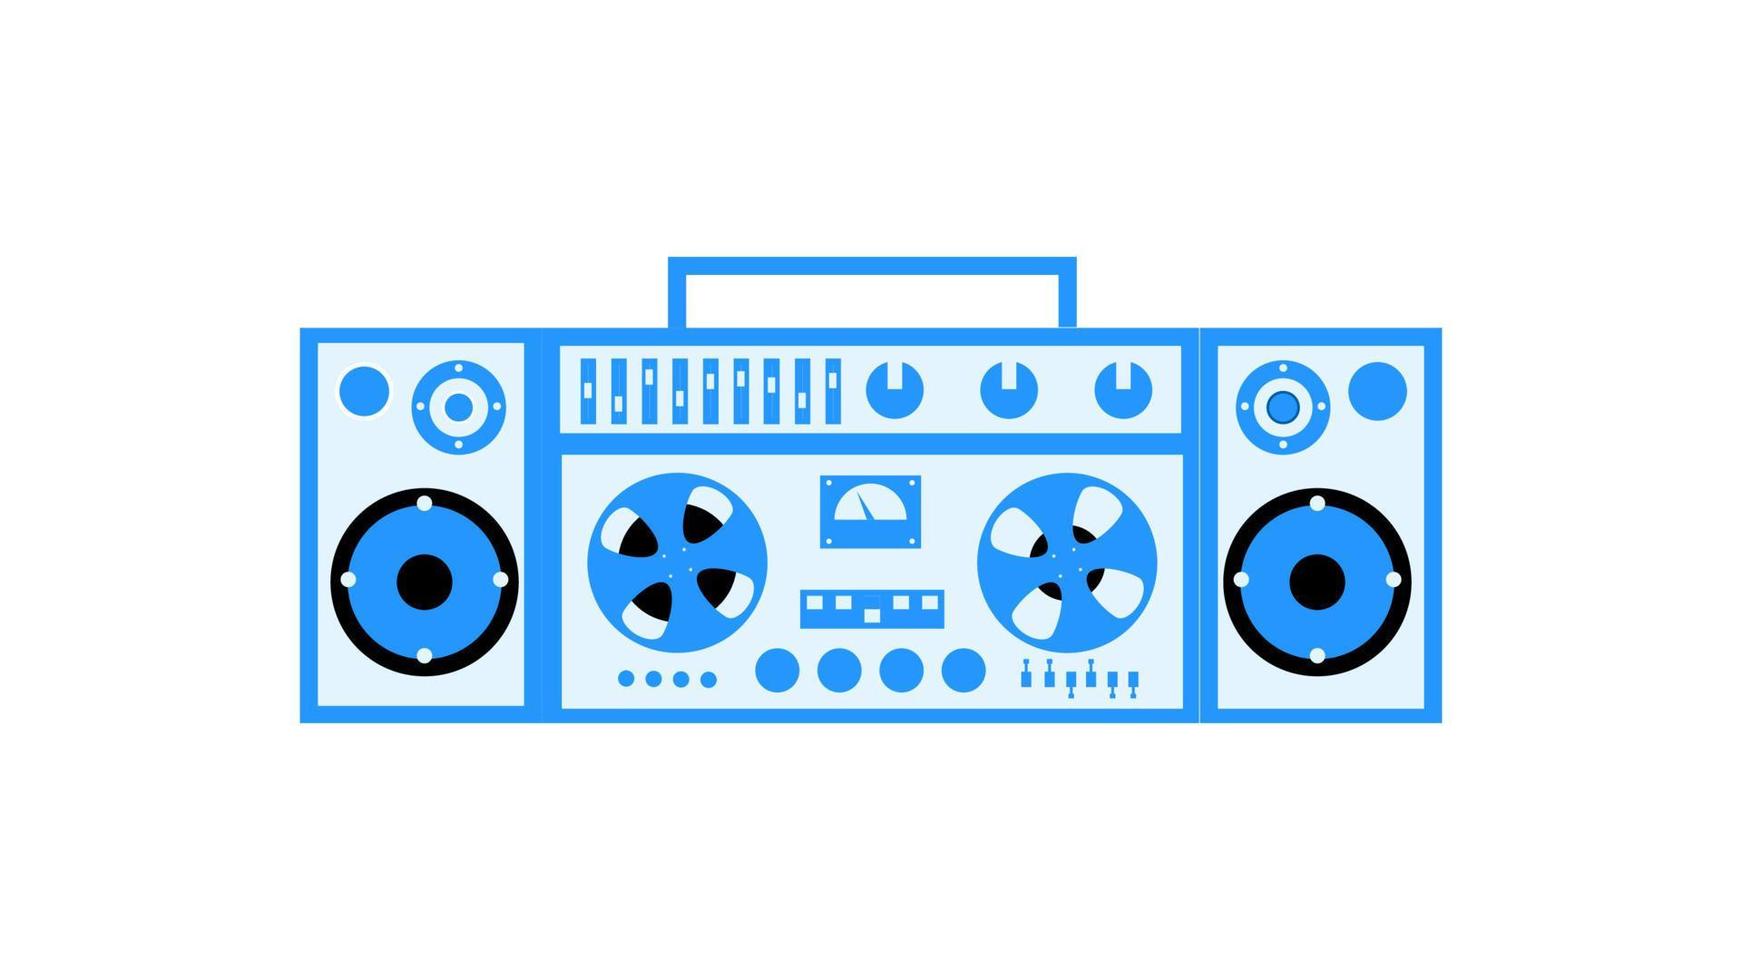 velho gravador de fita cassete de música vintage retrô azul com fita magnética em bobinas e alto-falantes dos anos 70, 80, 90. belo ícone. ilustração vetorial vetor